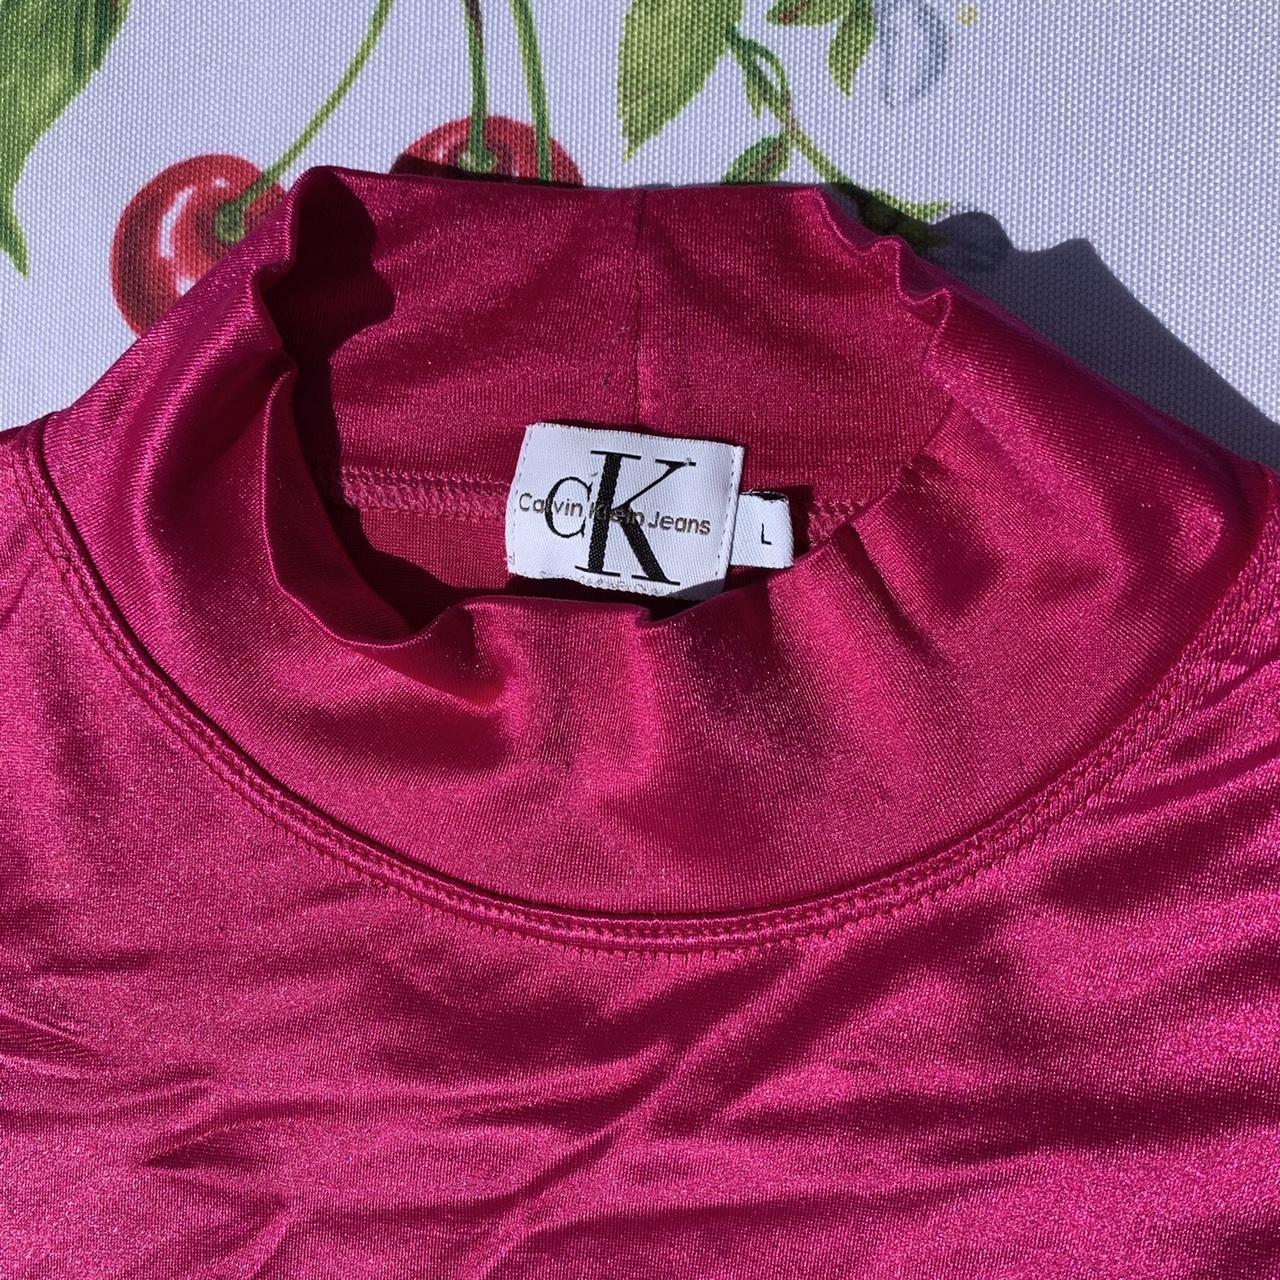 CK Calvin Klein Women's Pink Shirt (3)